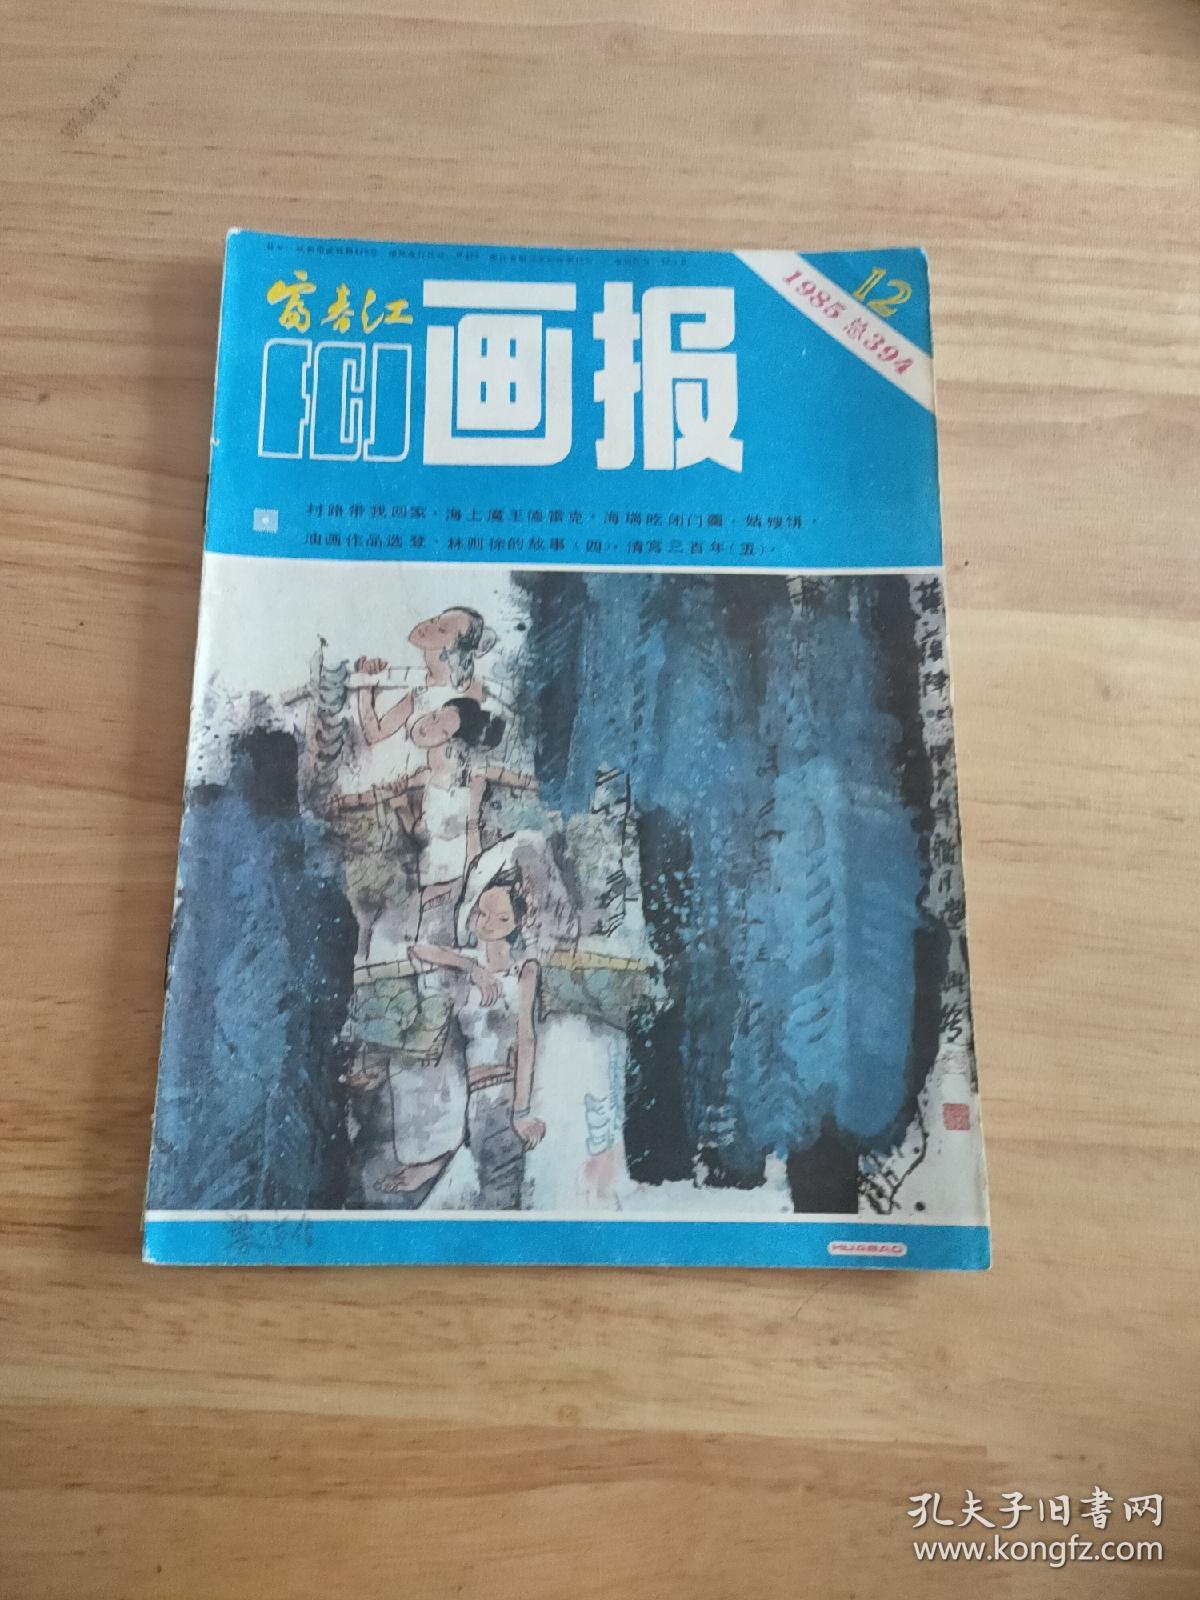 富春江画报1985.12(总394)